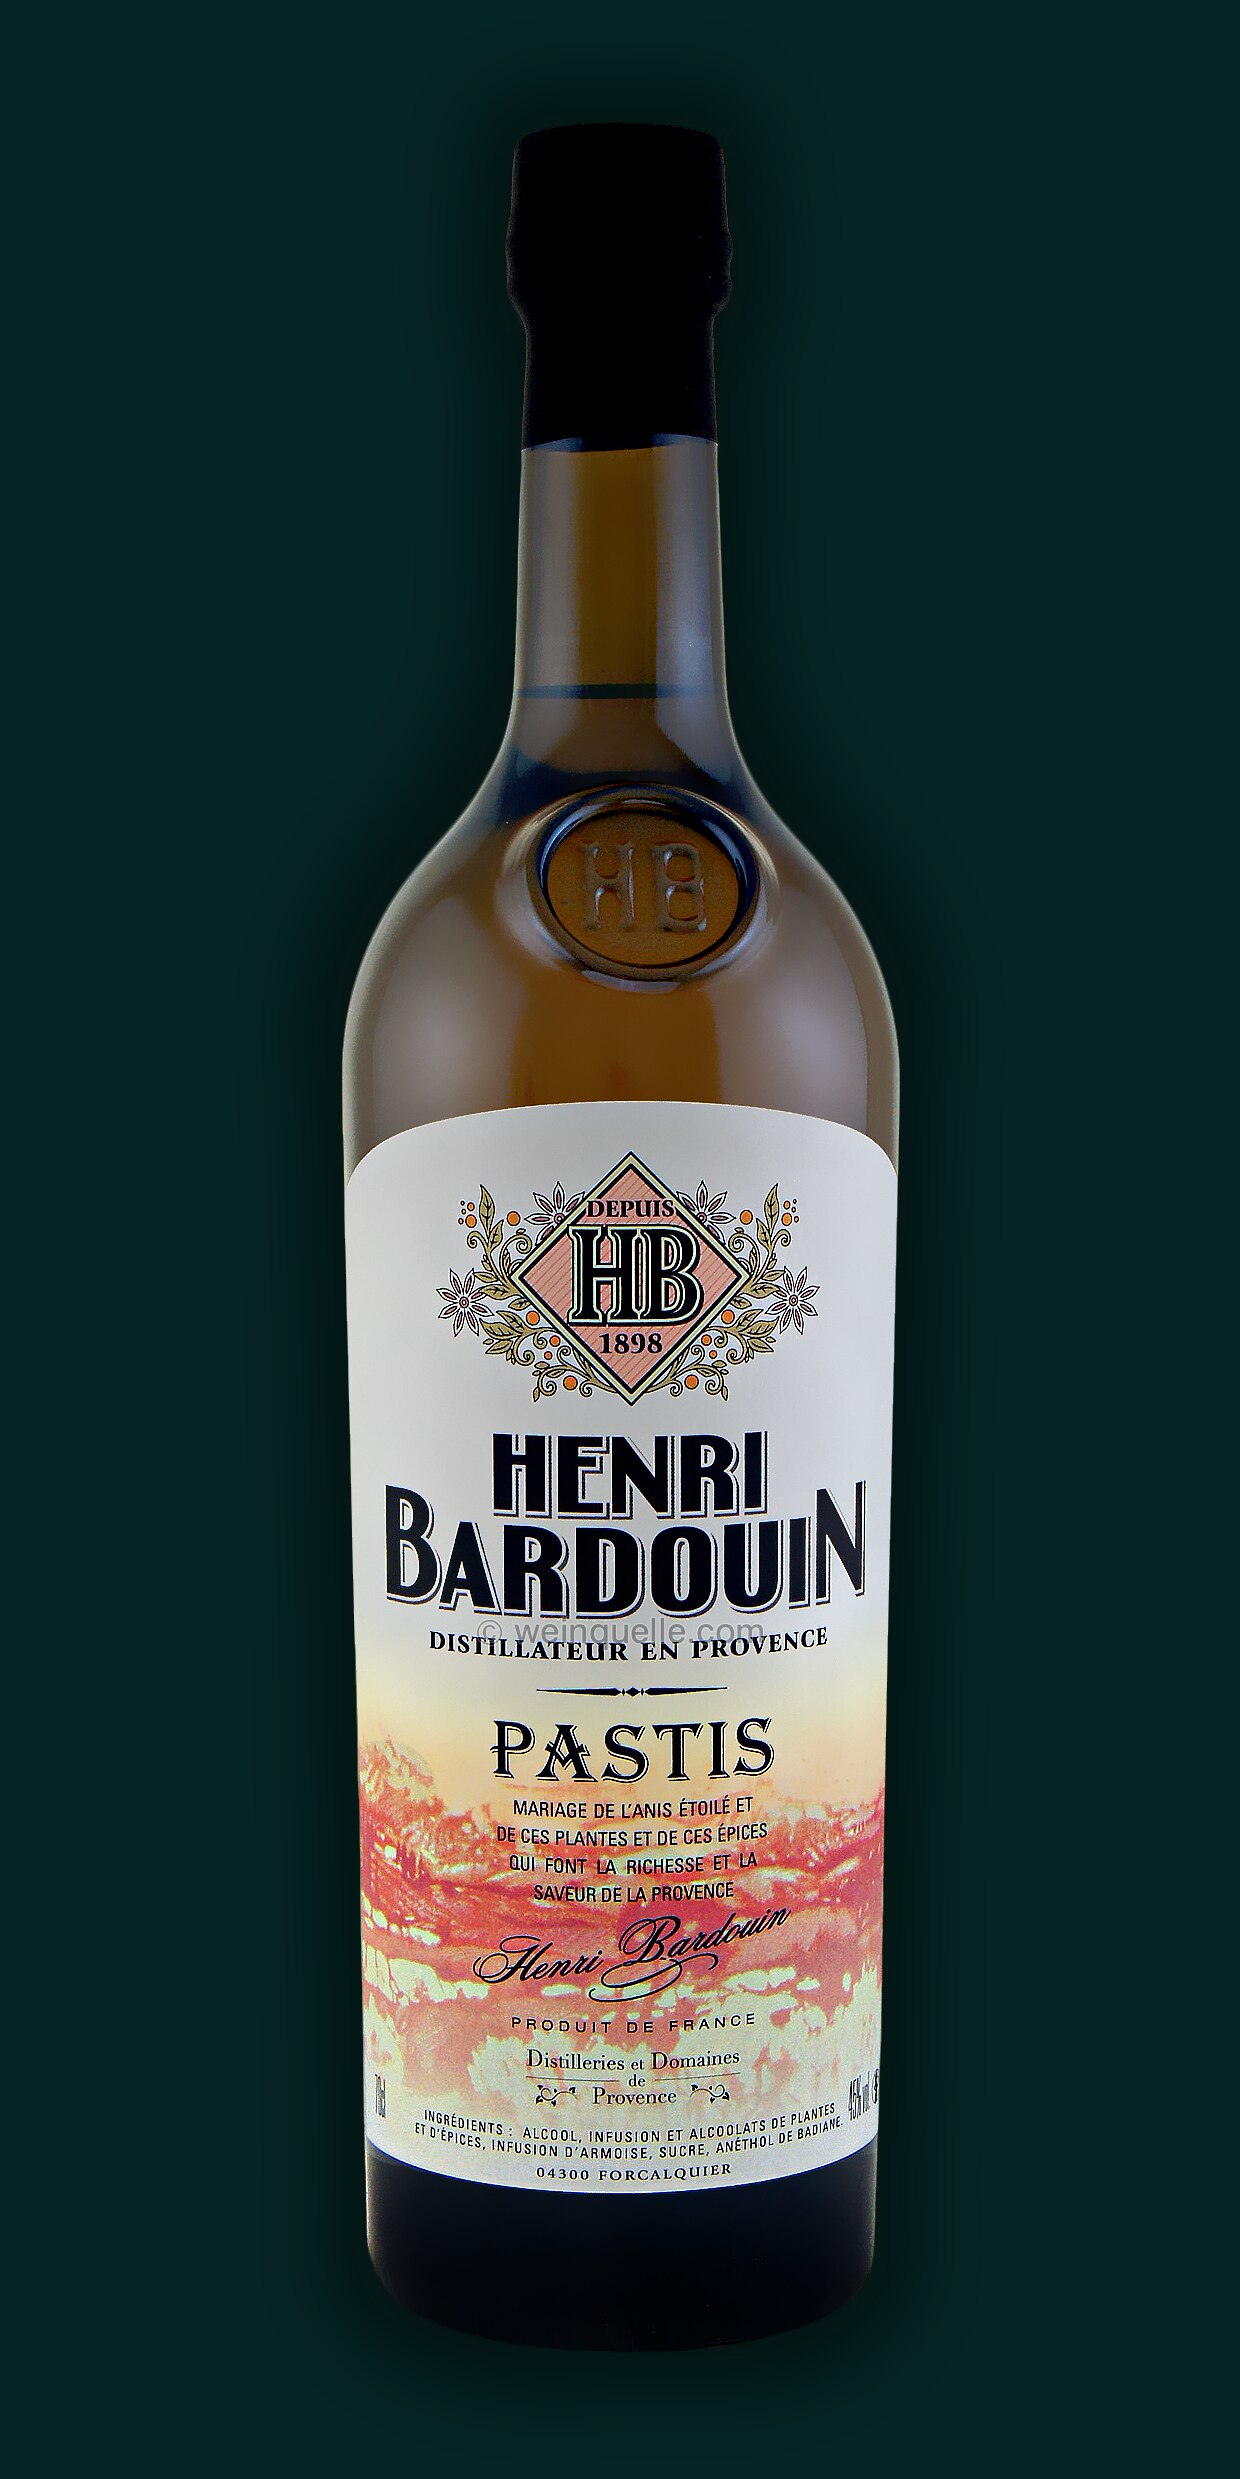 Henri Bardouin Pastis Liqueur France Spirits Review